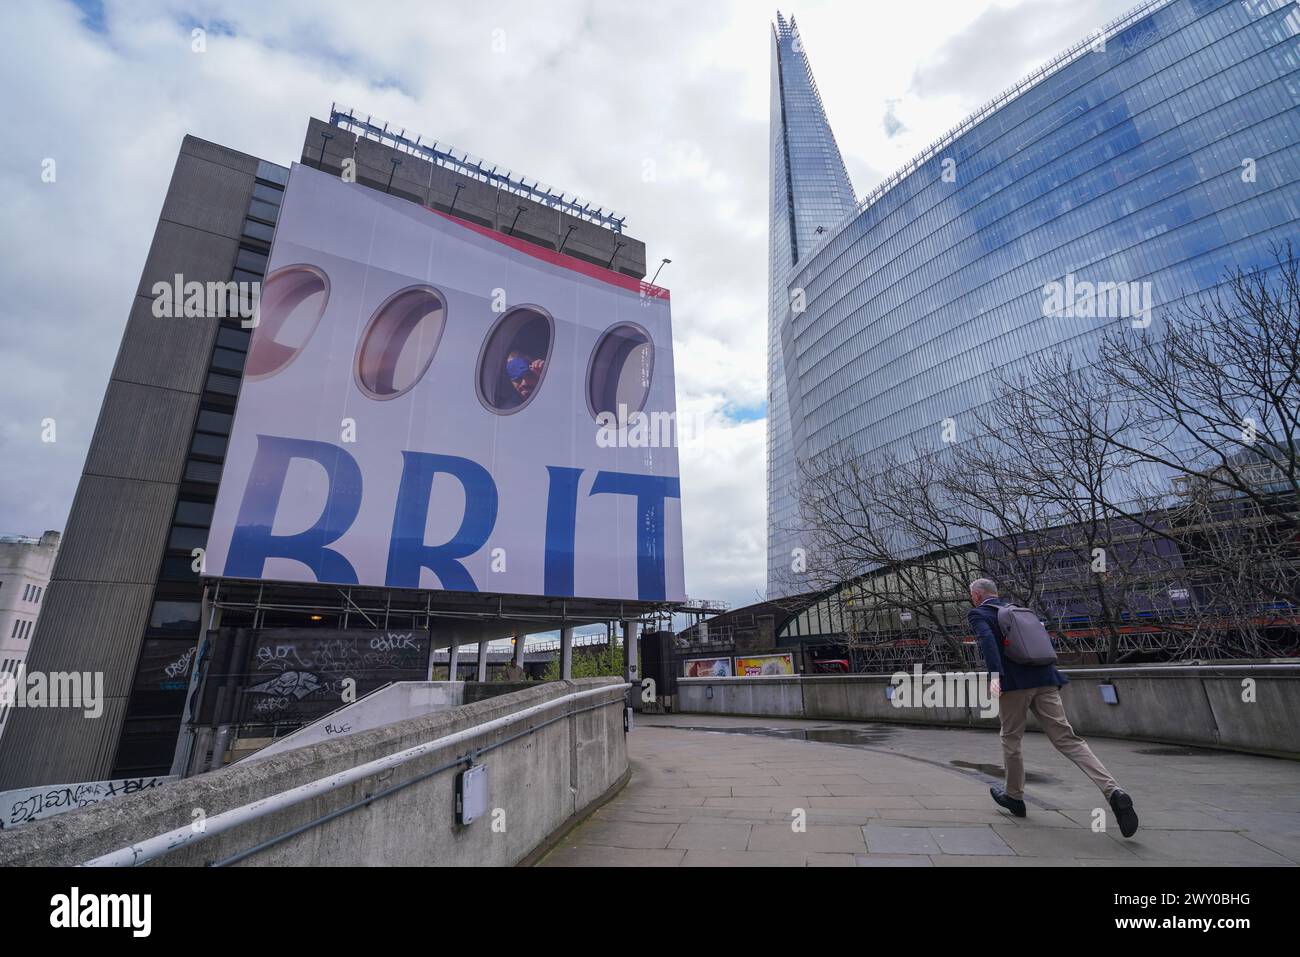 London 3 April 2024 . Ein großes Werbeplakat ziert die Fassade eines Gebäudes in der London Bridge mit einem Passagier, der aus einem Flugzeugfenster über das Wort „BRIT“ blickt, als Teil der neuen British Airways Kampagne Credit: amer ghazzal/Alamy Live News Stockfoto